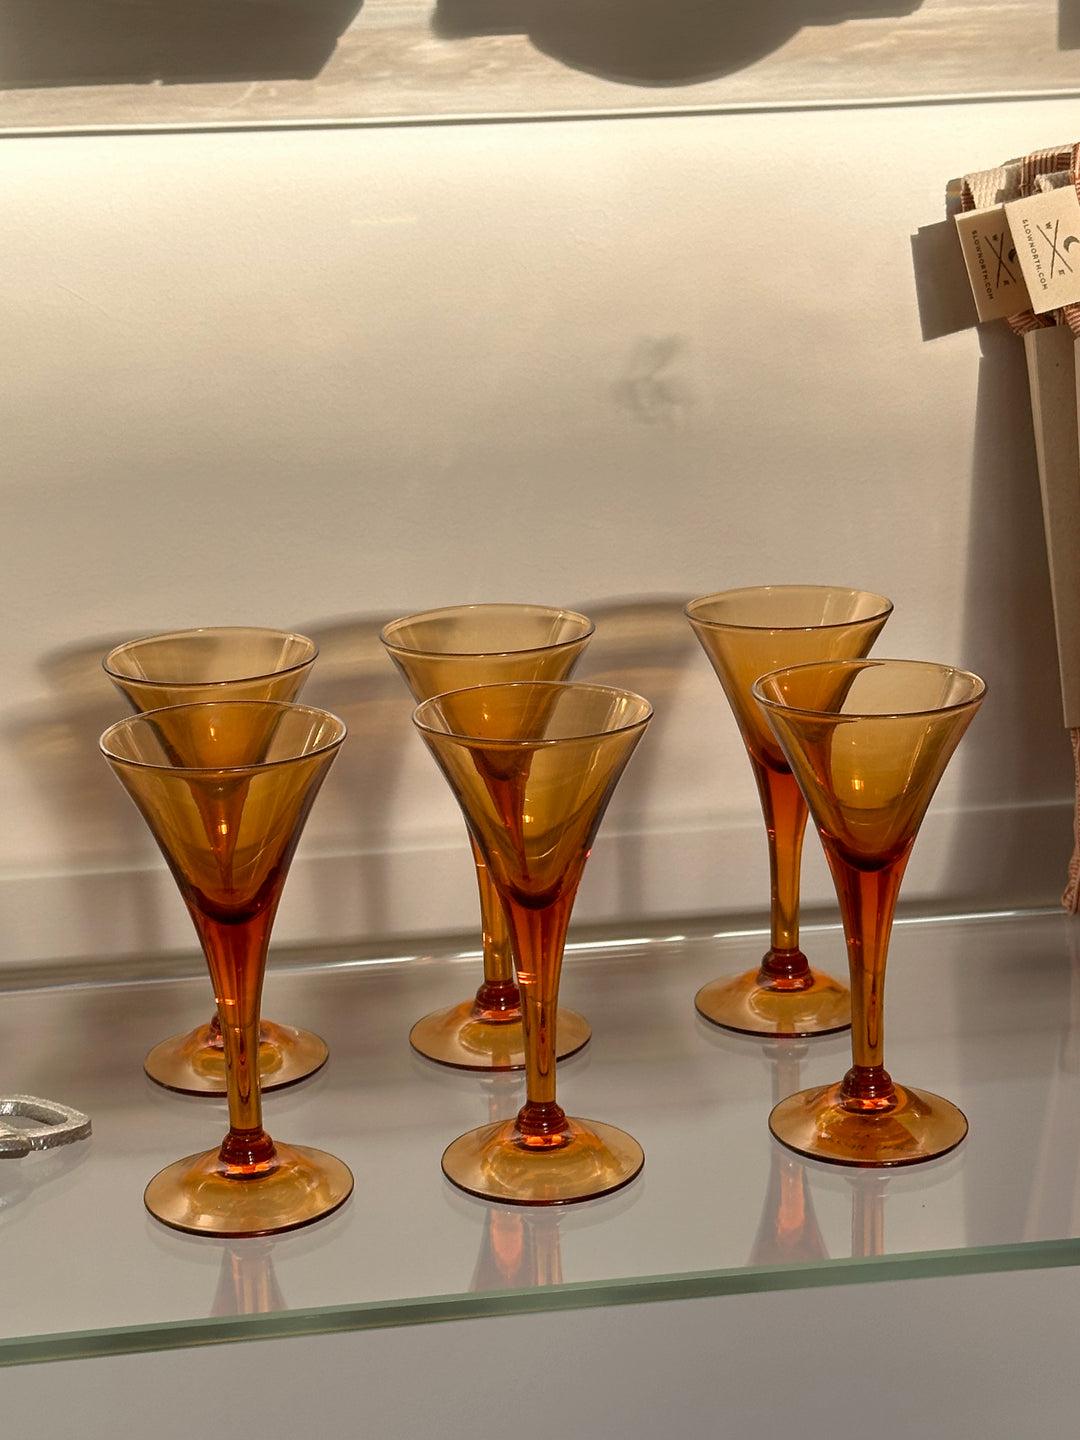 aperitif glasses (6)